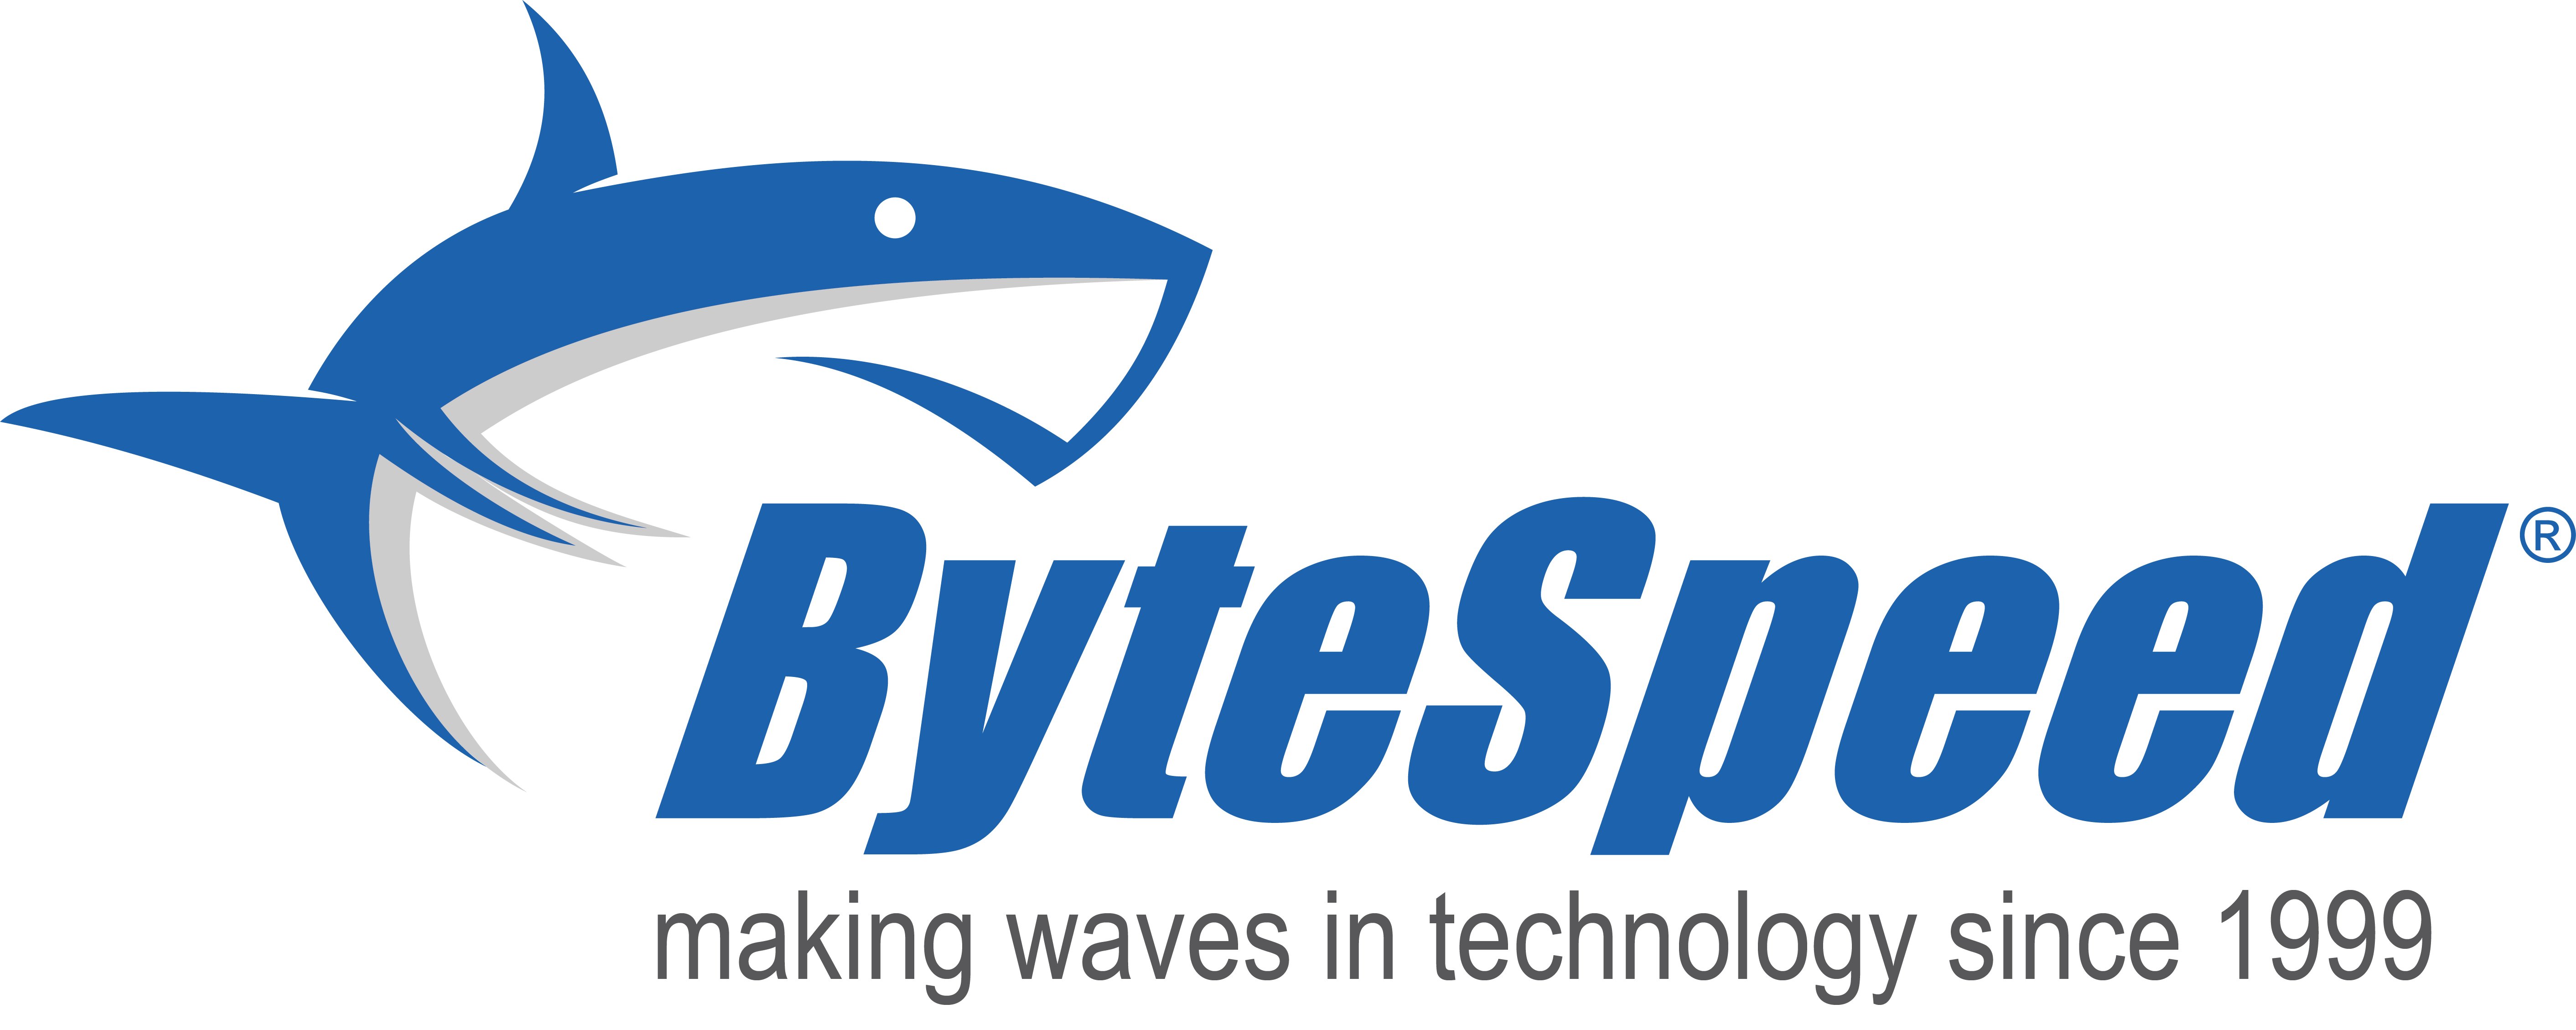 ByteSpeed Shark Blue logo.png - 241.65 Kb